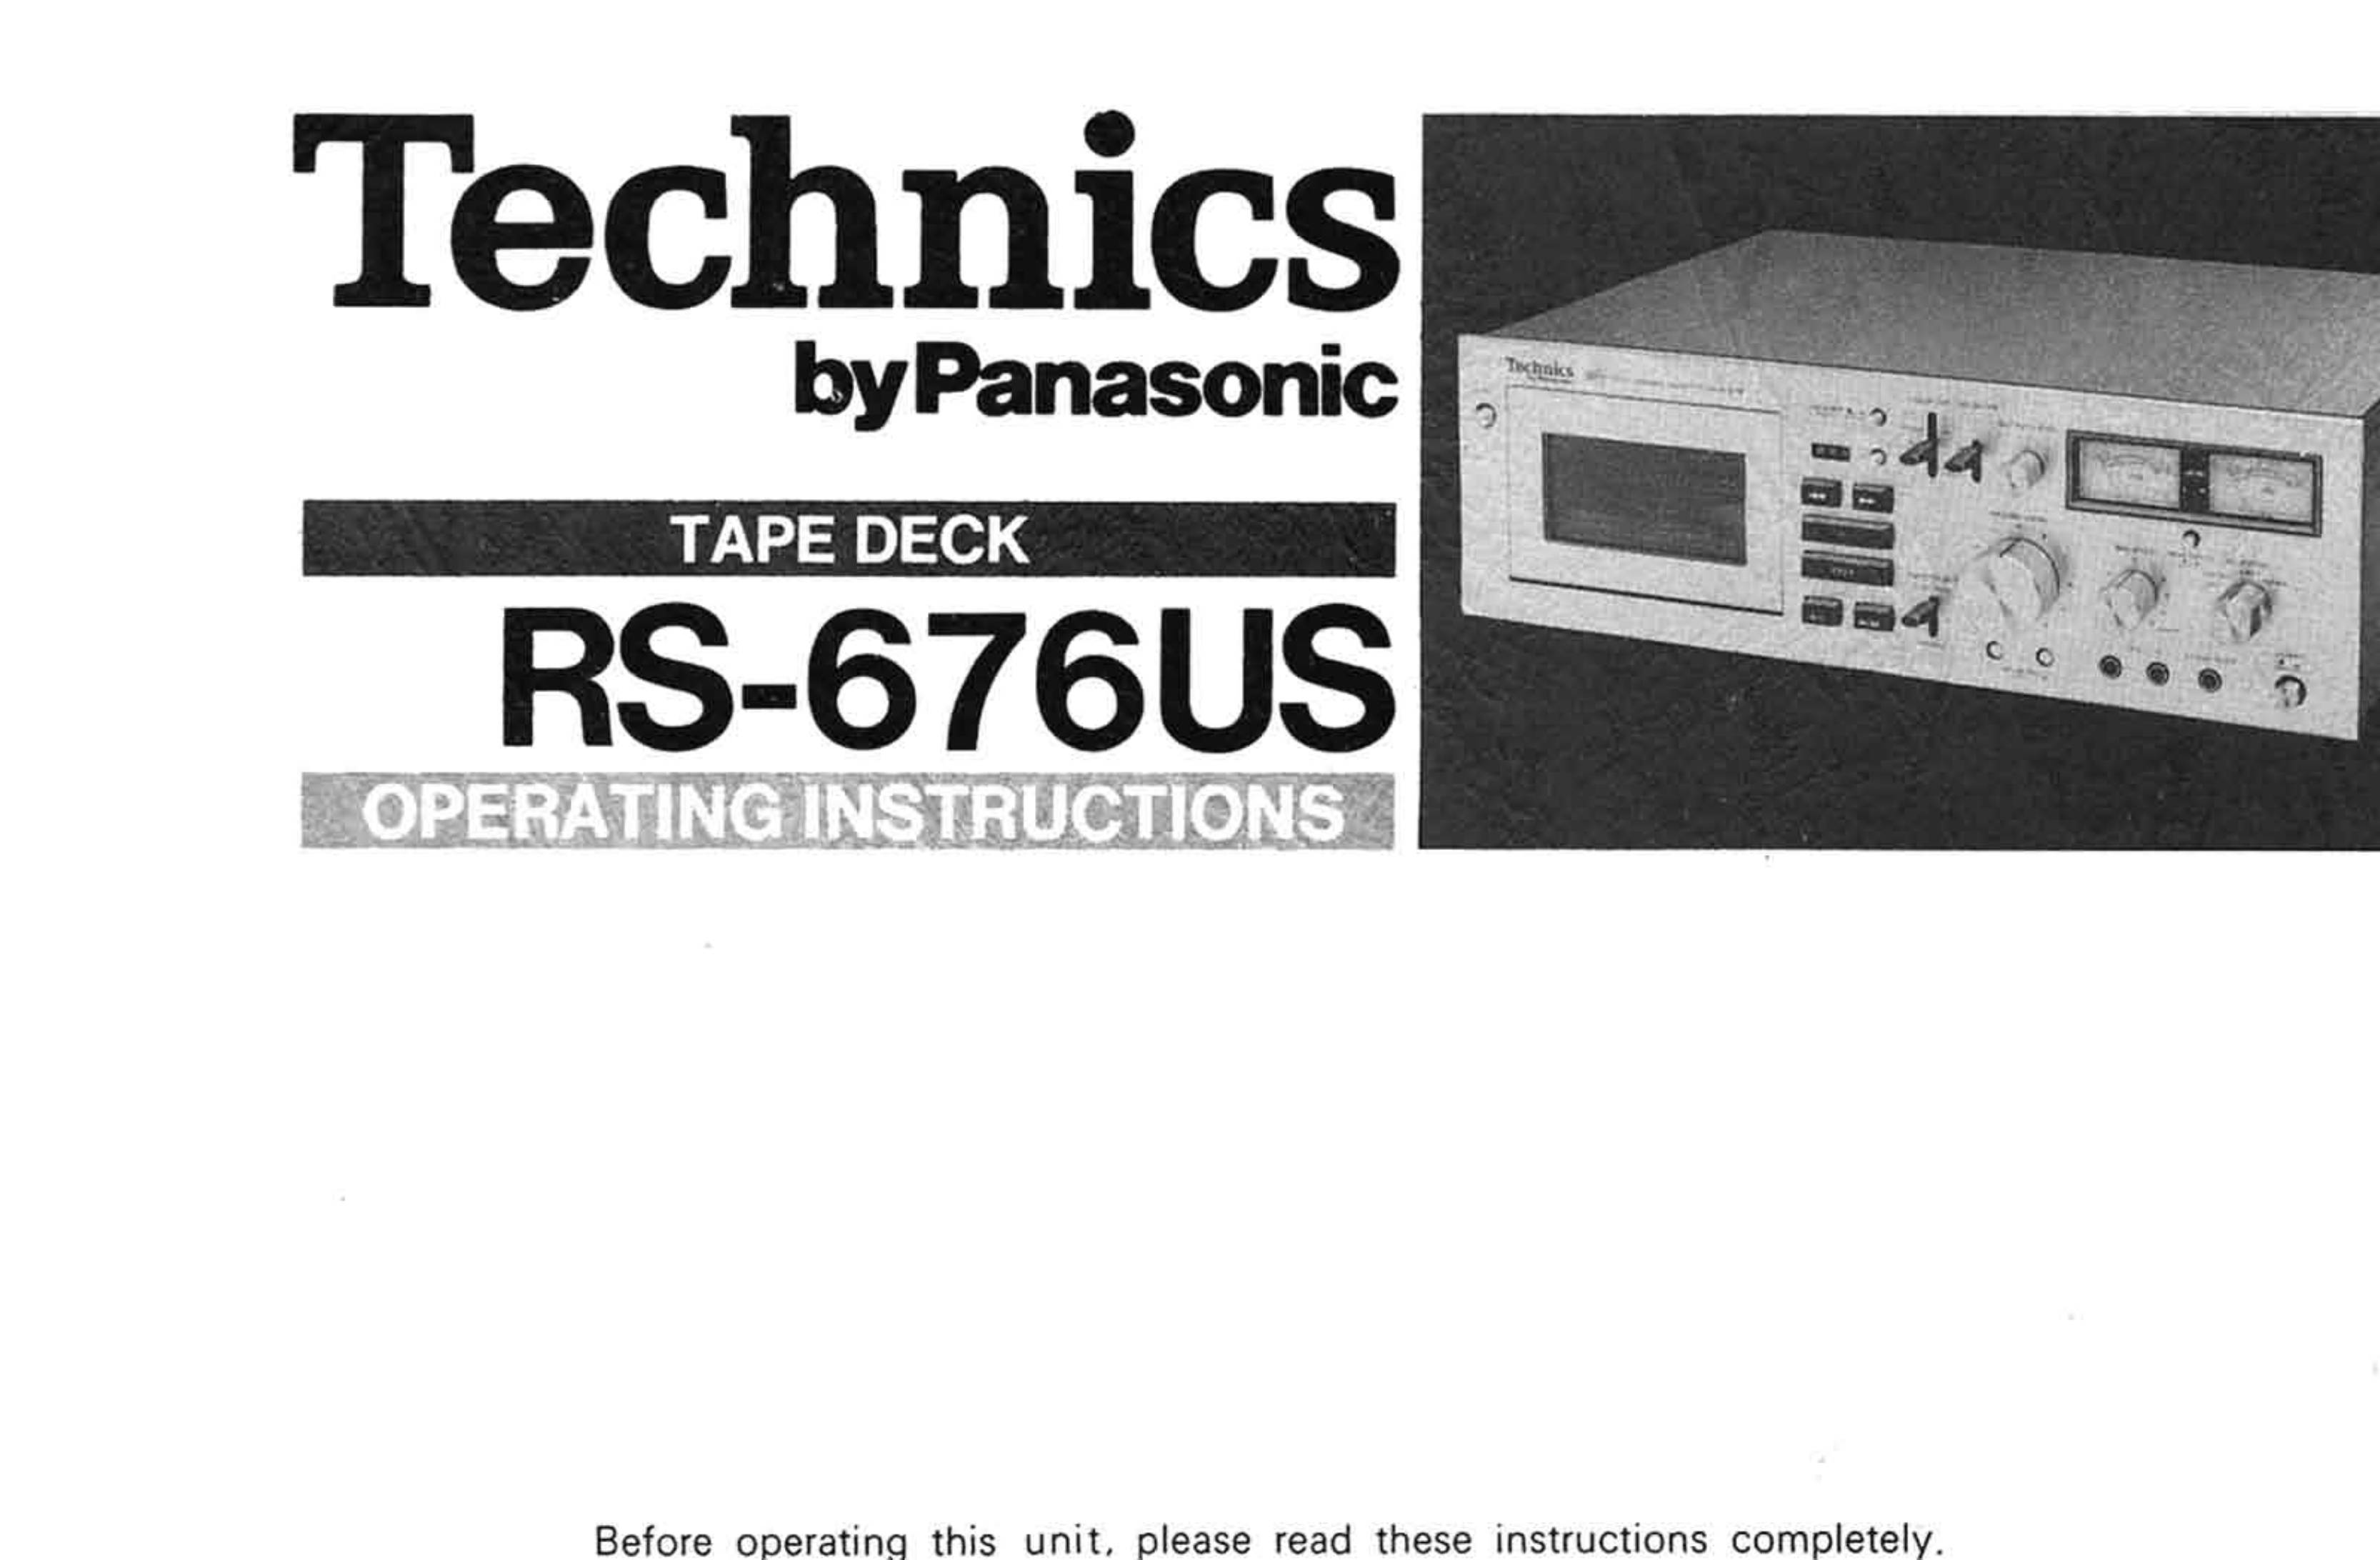 Technics RS-676 (US)